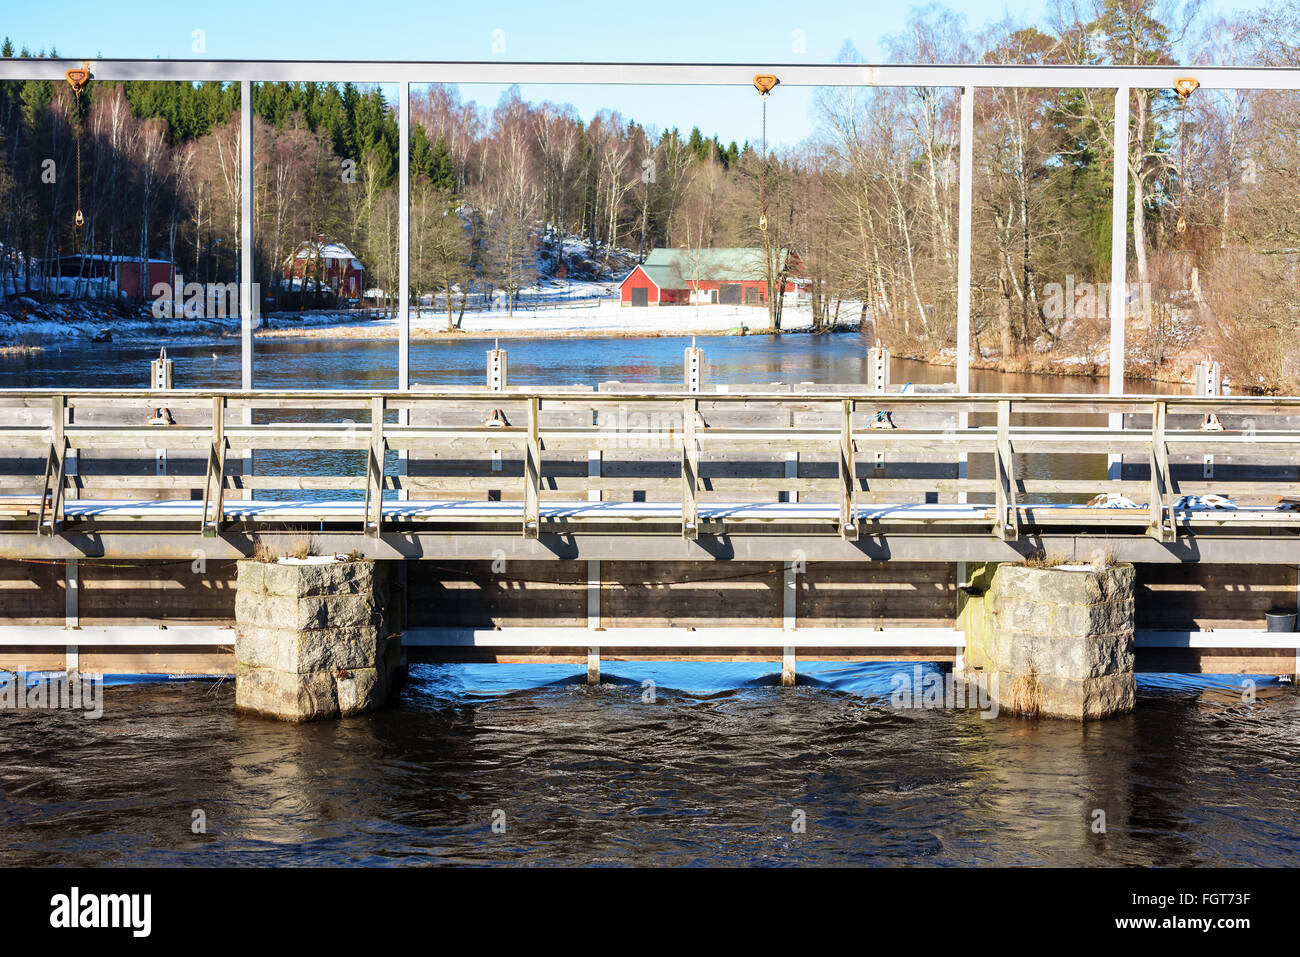 Détail d'un article d'une porte d'eau sur une rivière. Sur le fleuve de l'Morrumsan Fridafors, Suède. Banque D'Images